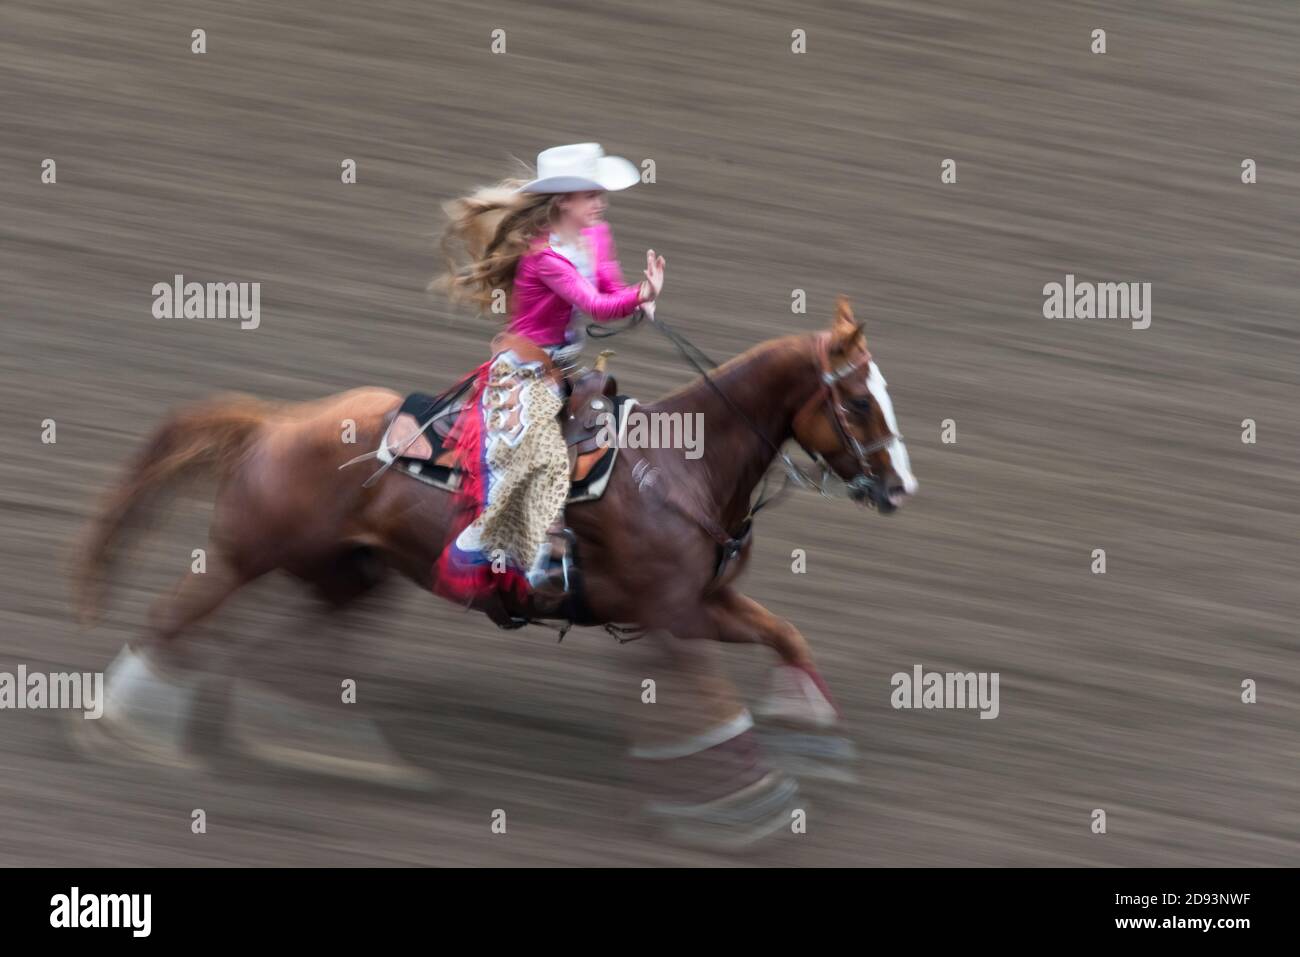 Cowgirl Reiten auf Pferd galoppieren in der Arena, Omak Stampede, Washington State, USA Stockfoto